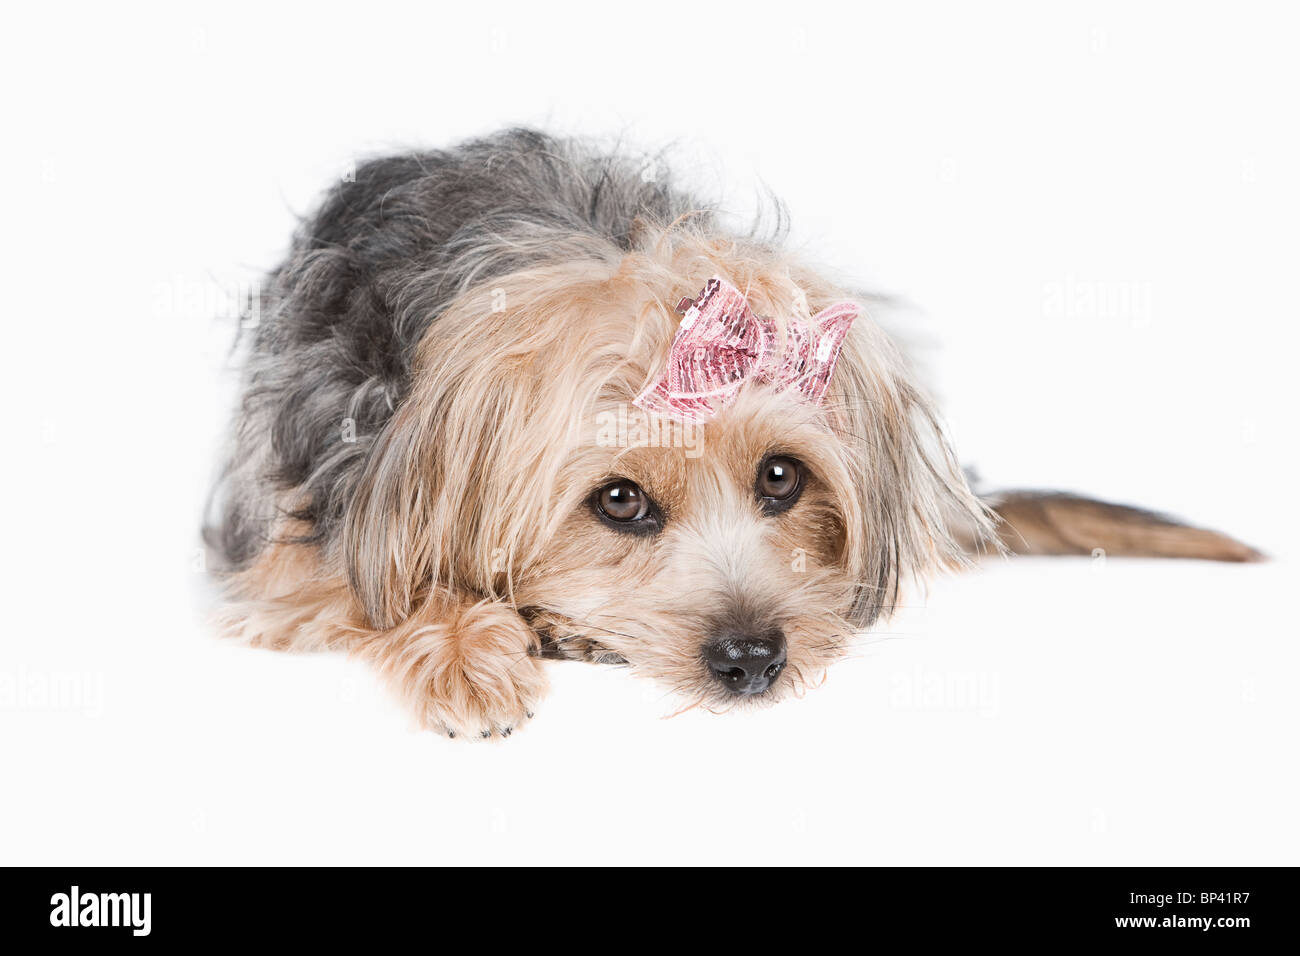 Portrait of a Cute Yorkshire Terrier contre fond clair Banque D'Images